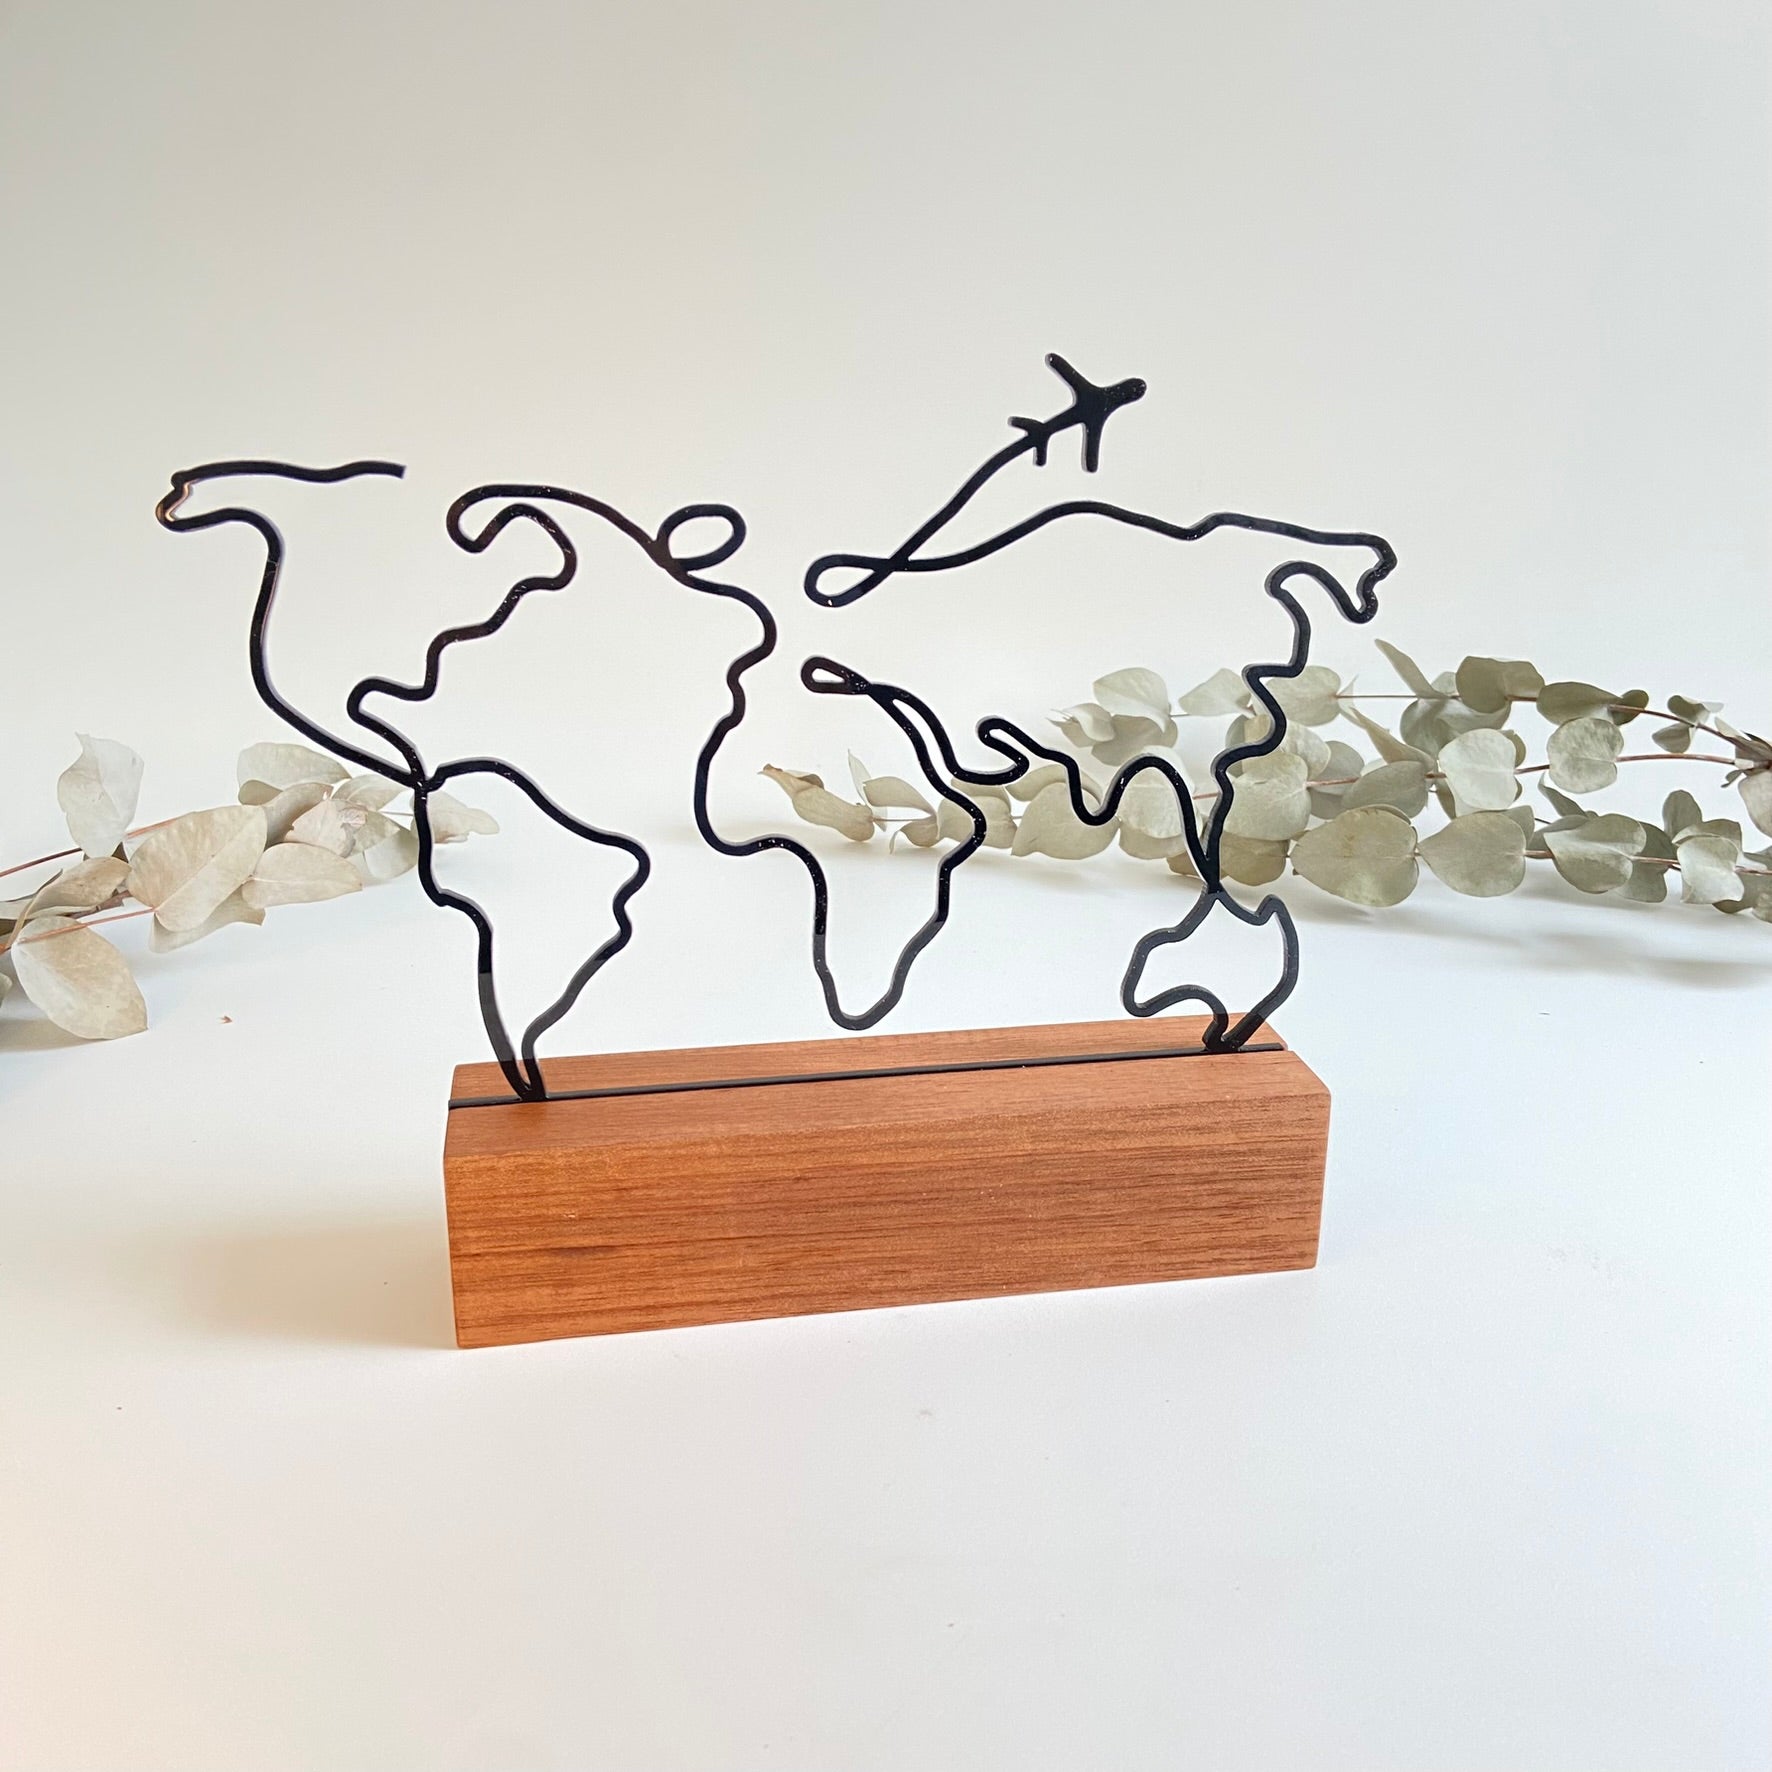 Escultura de Base em Madeira Personalizável - Mapa Mundi Minimalista